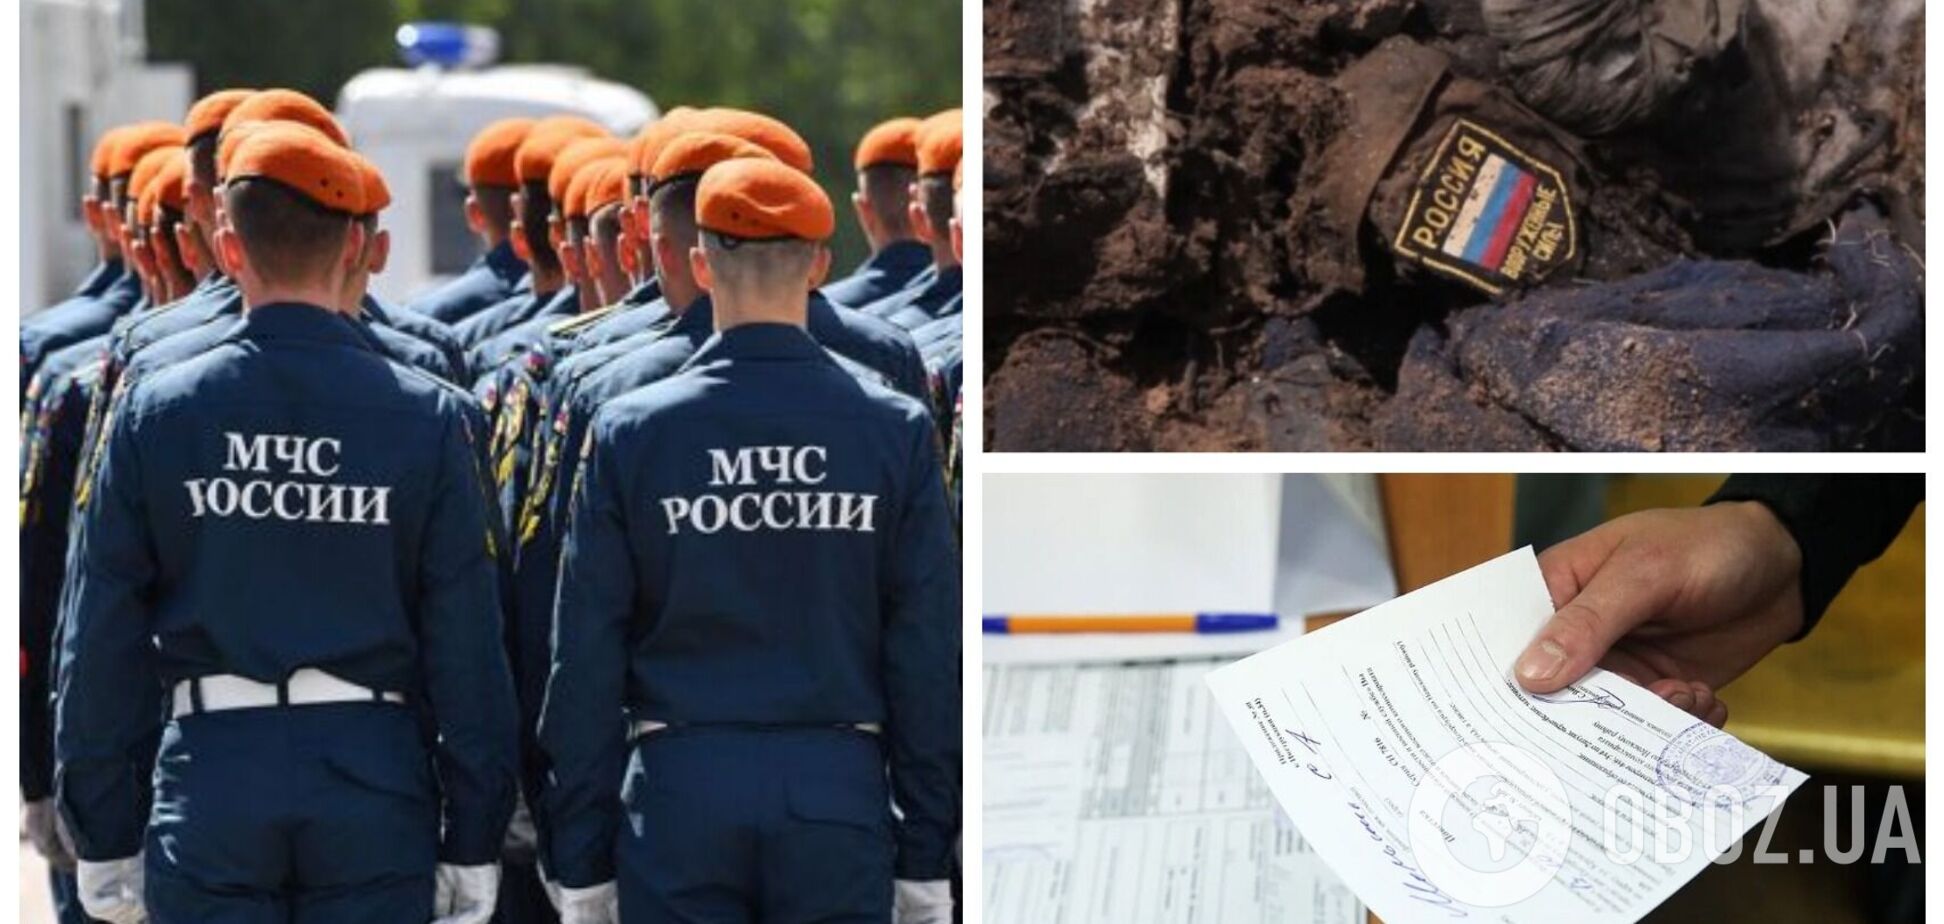 В России начали массово раздавать повестки для призыва в армию работникам МЧС